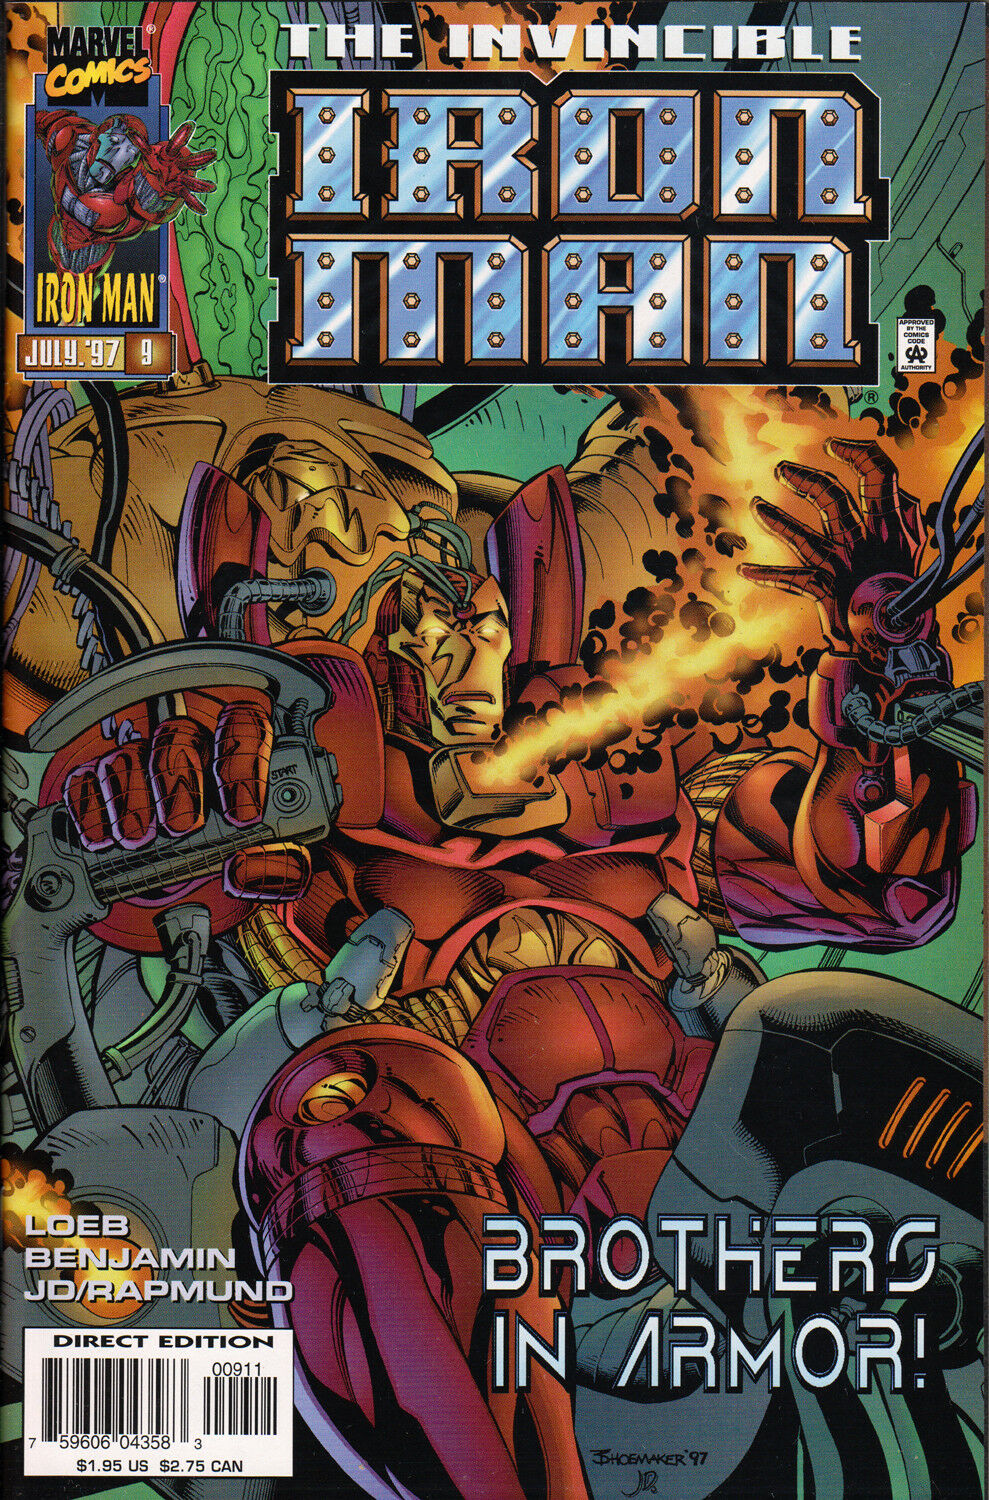 IRON MAN #9 (VOL. 2) COMIC BOOK ~ Ryan Benjamin Art ~ Marvel Comics